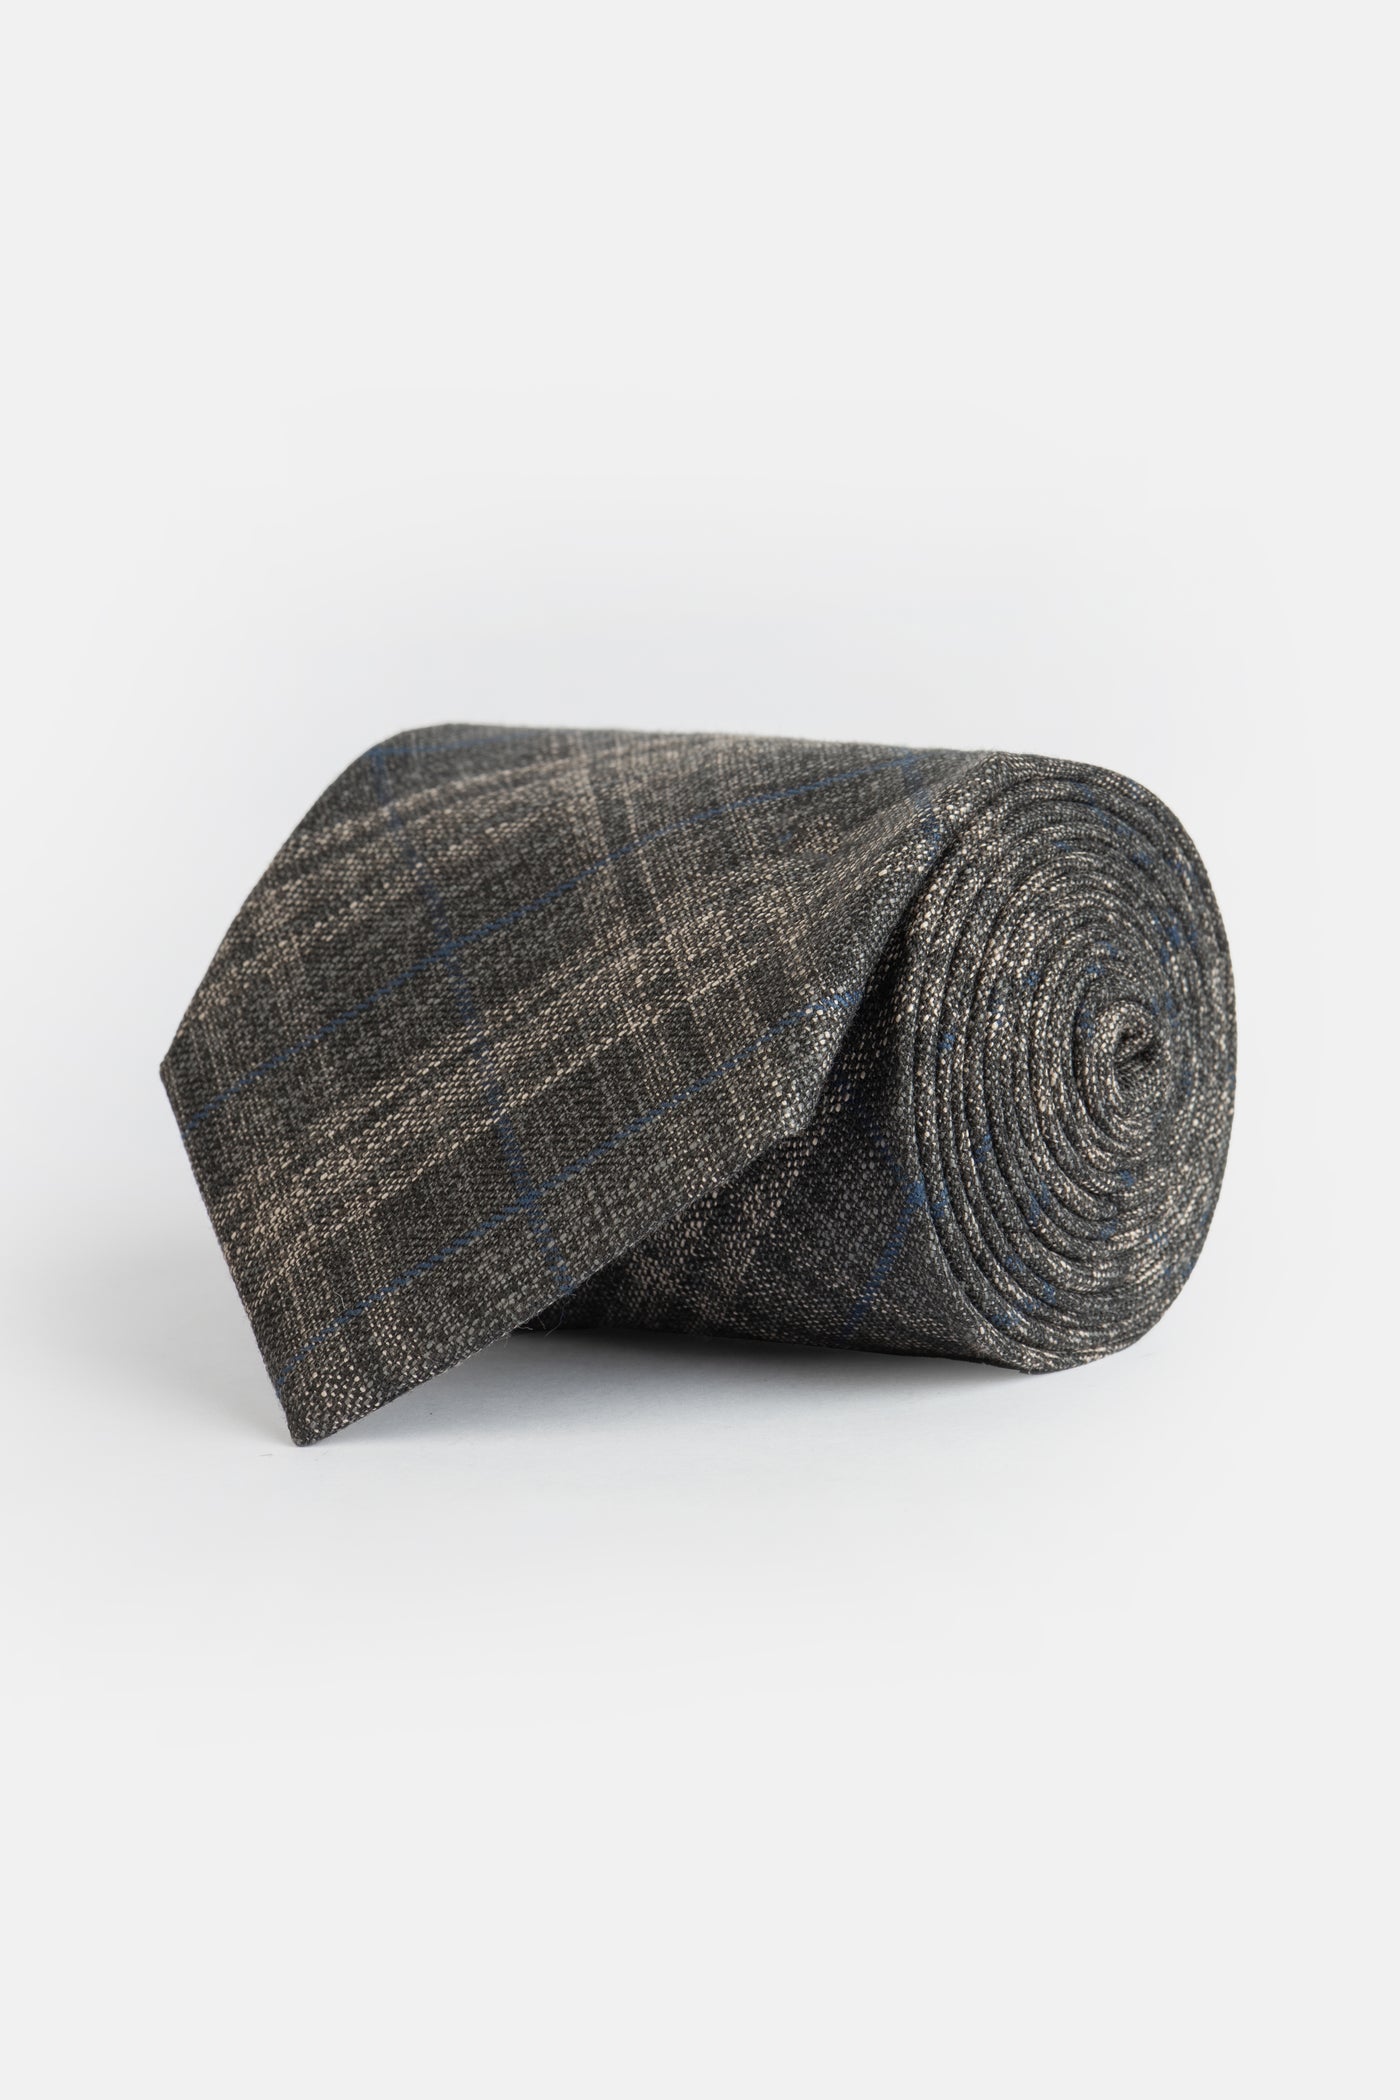 Knitted Gray & Beige Necktie With Handkerchief